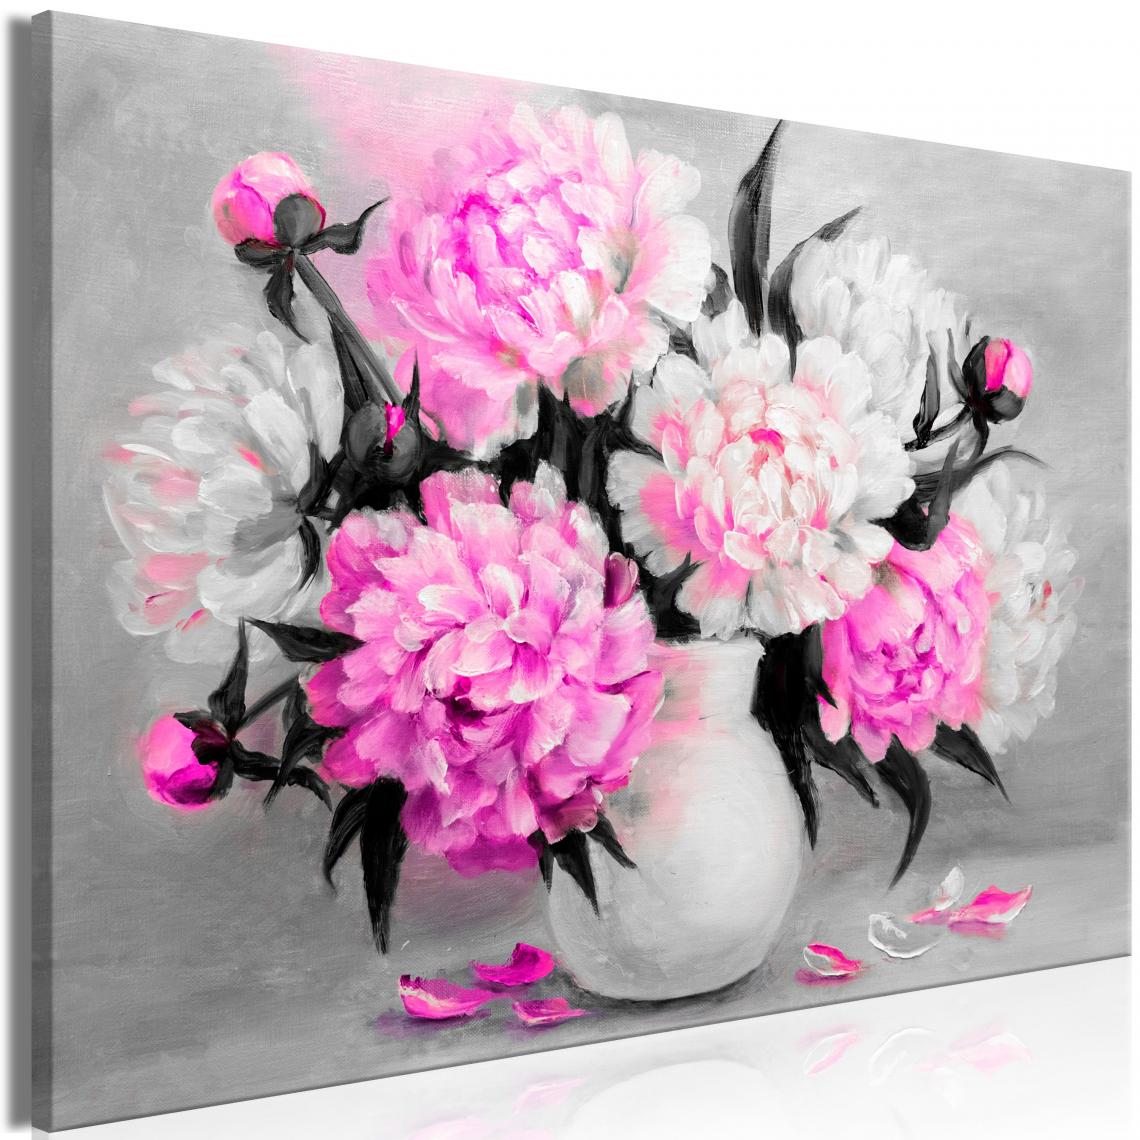 Decoshop26 - Tableau sur toile décoration murale image imprimée cadre en bois à suspendre Couleurs parfumées (1 partie)Large rose 120x80 cm 11_0004786 - Tableaux, peintures